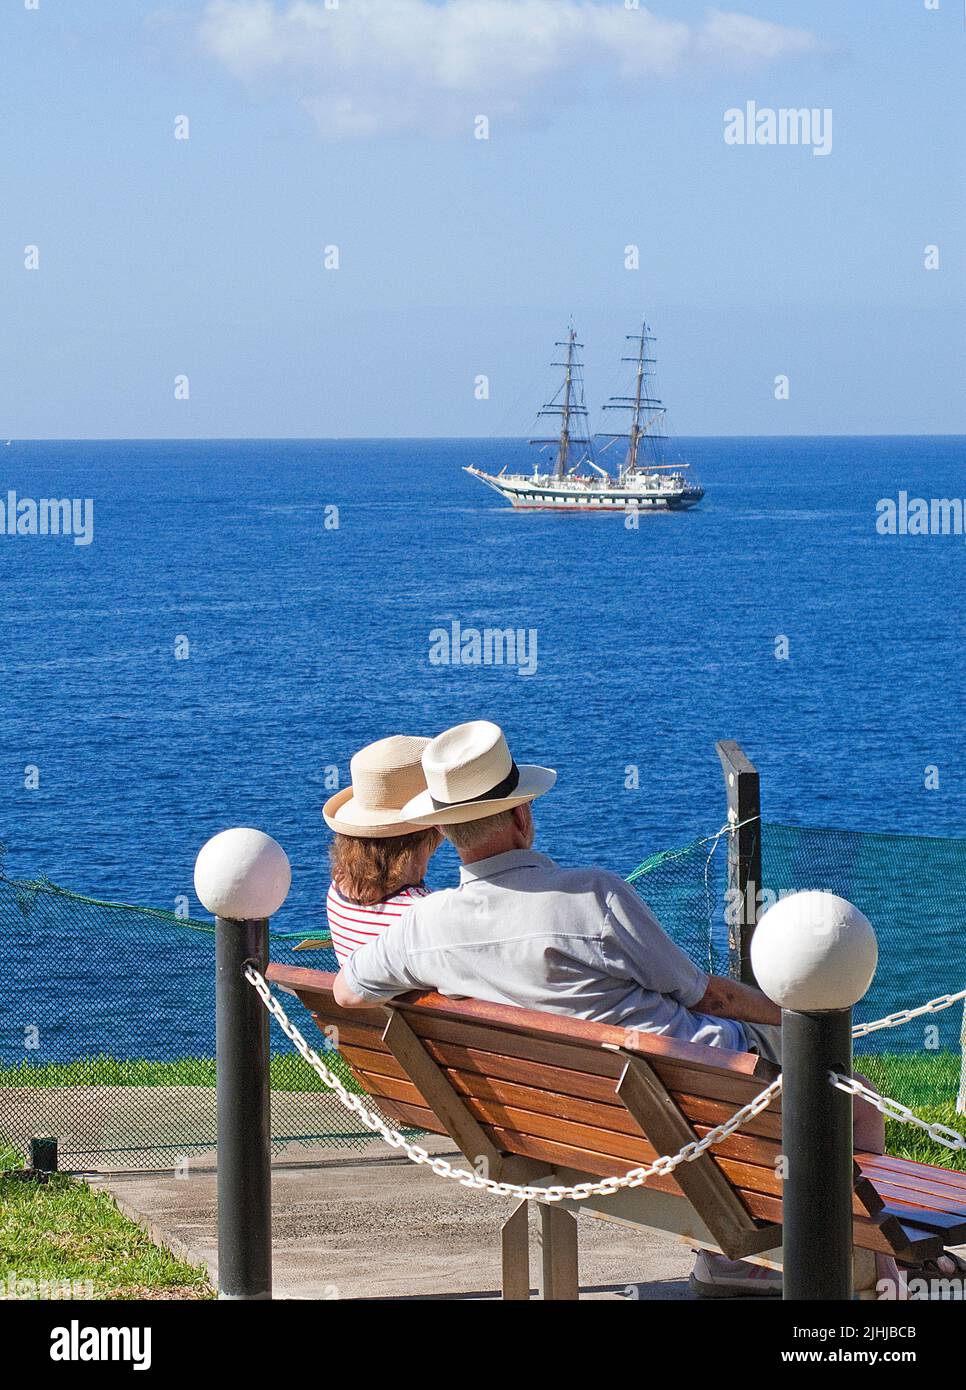 Pareja mayor con sombreros de paja sentado en un banco y disfrutando de la vista al mar, Taurito, Gran Canarias, Islas Canarias, España, Europa Foto de stock